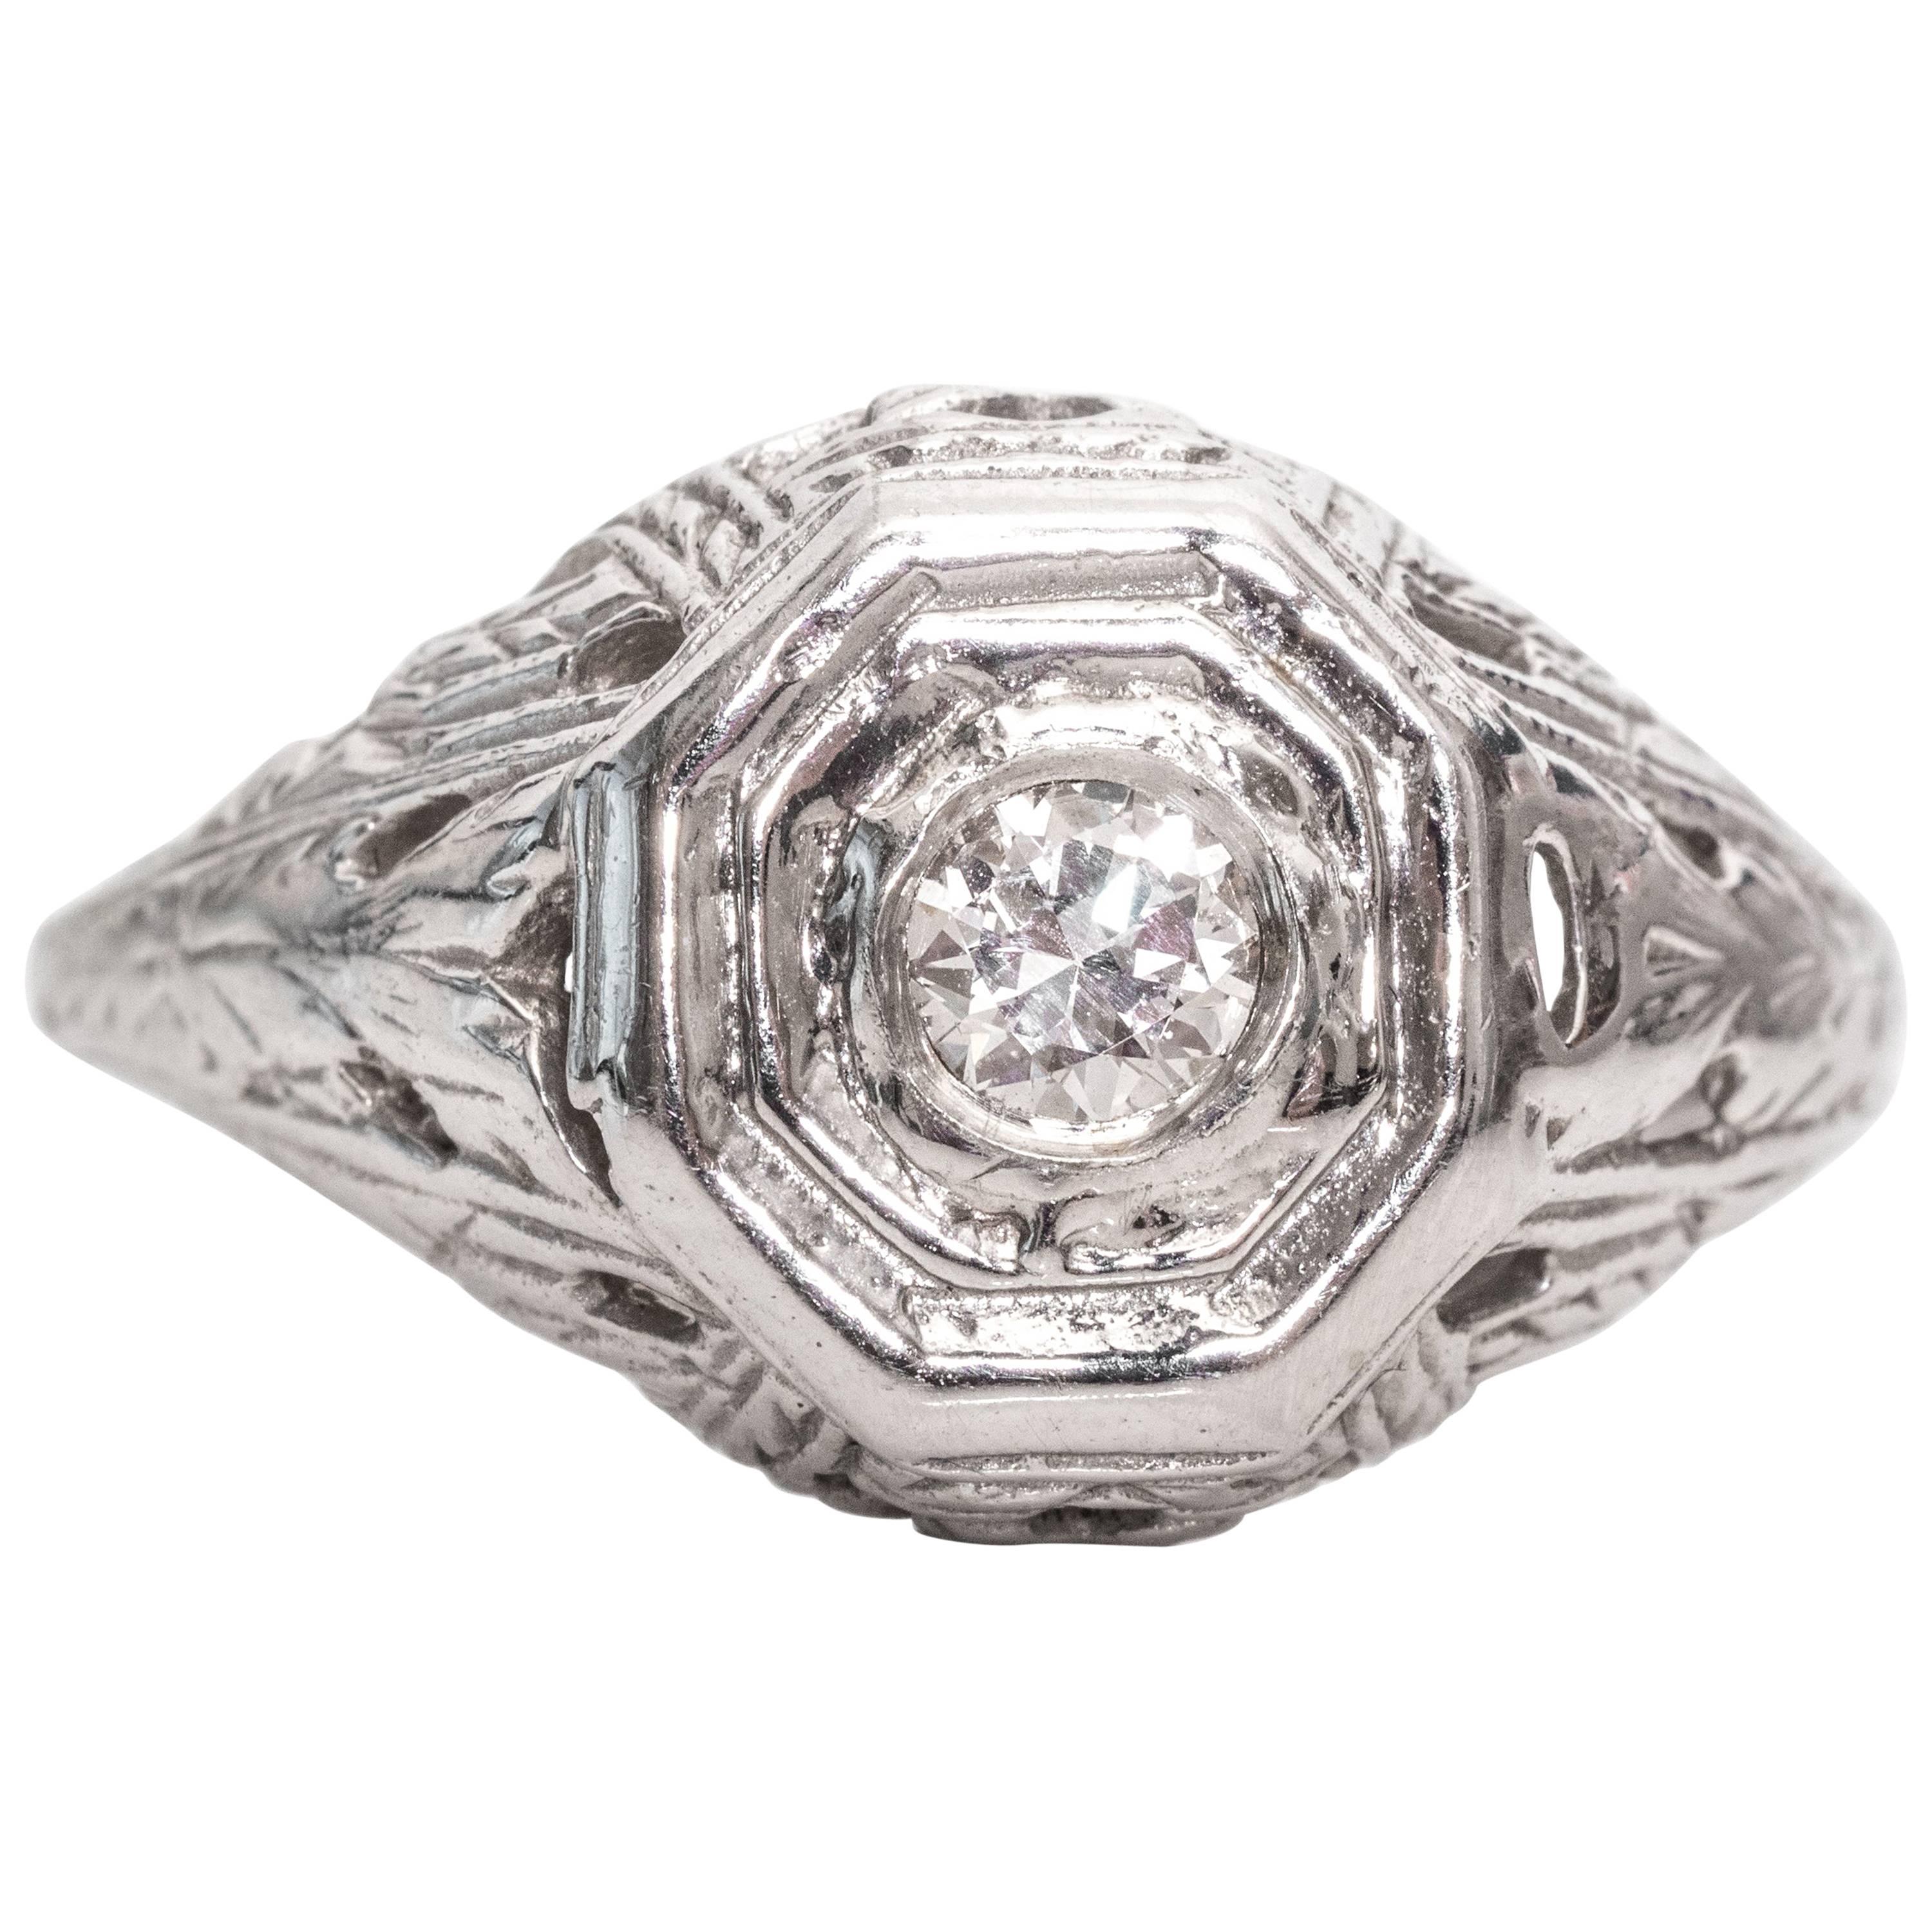 1940s 0.25 carat Old European Diamond and 14 karat White Gold Engagement Ring